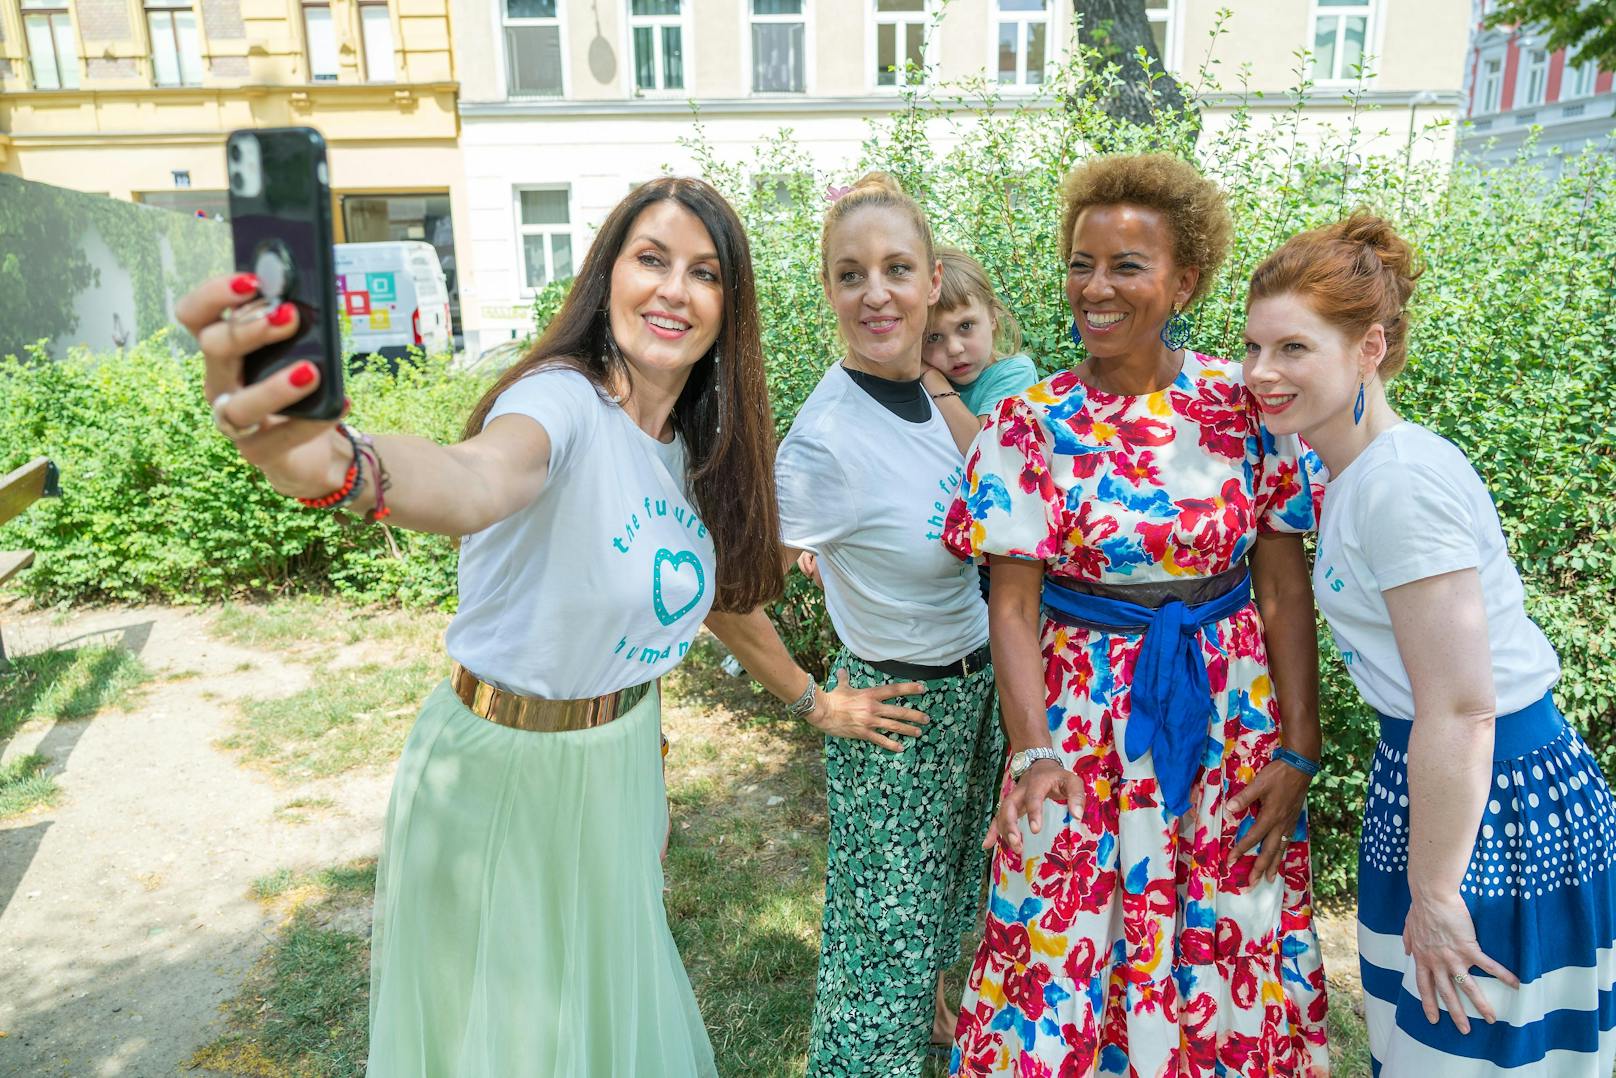 Selfie-Zeit: Monika Ballwein, Lilian Klebow mit Sohn, Arabella Kiesbauer und Teresa Vogl